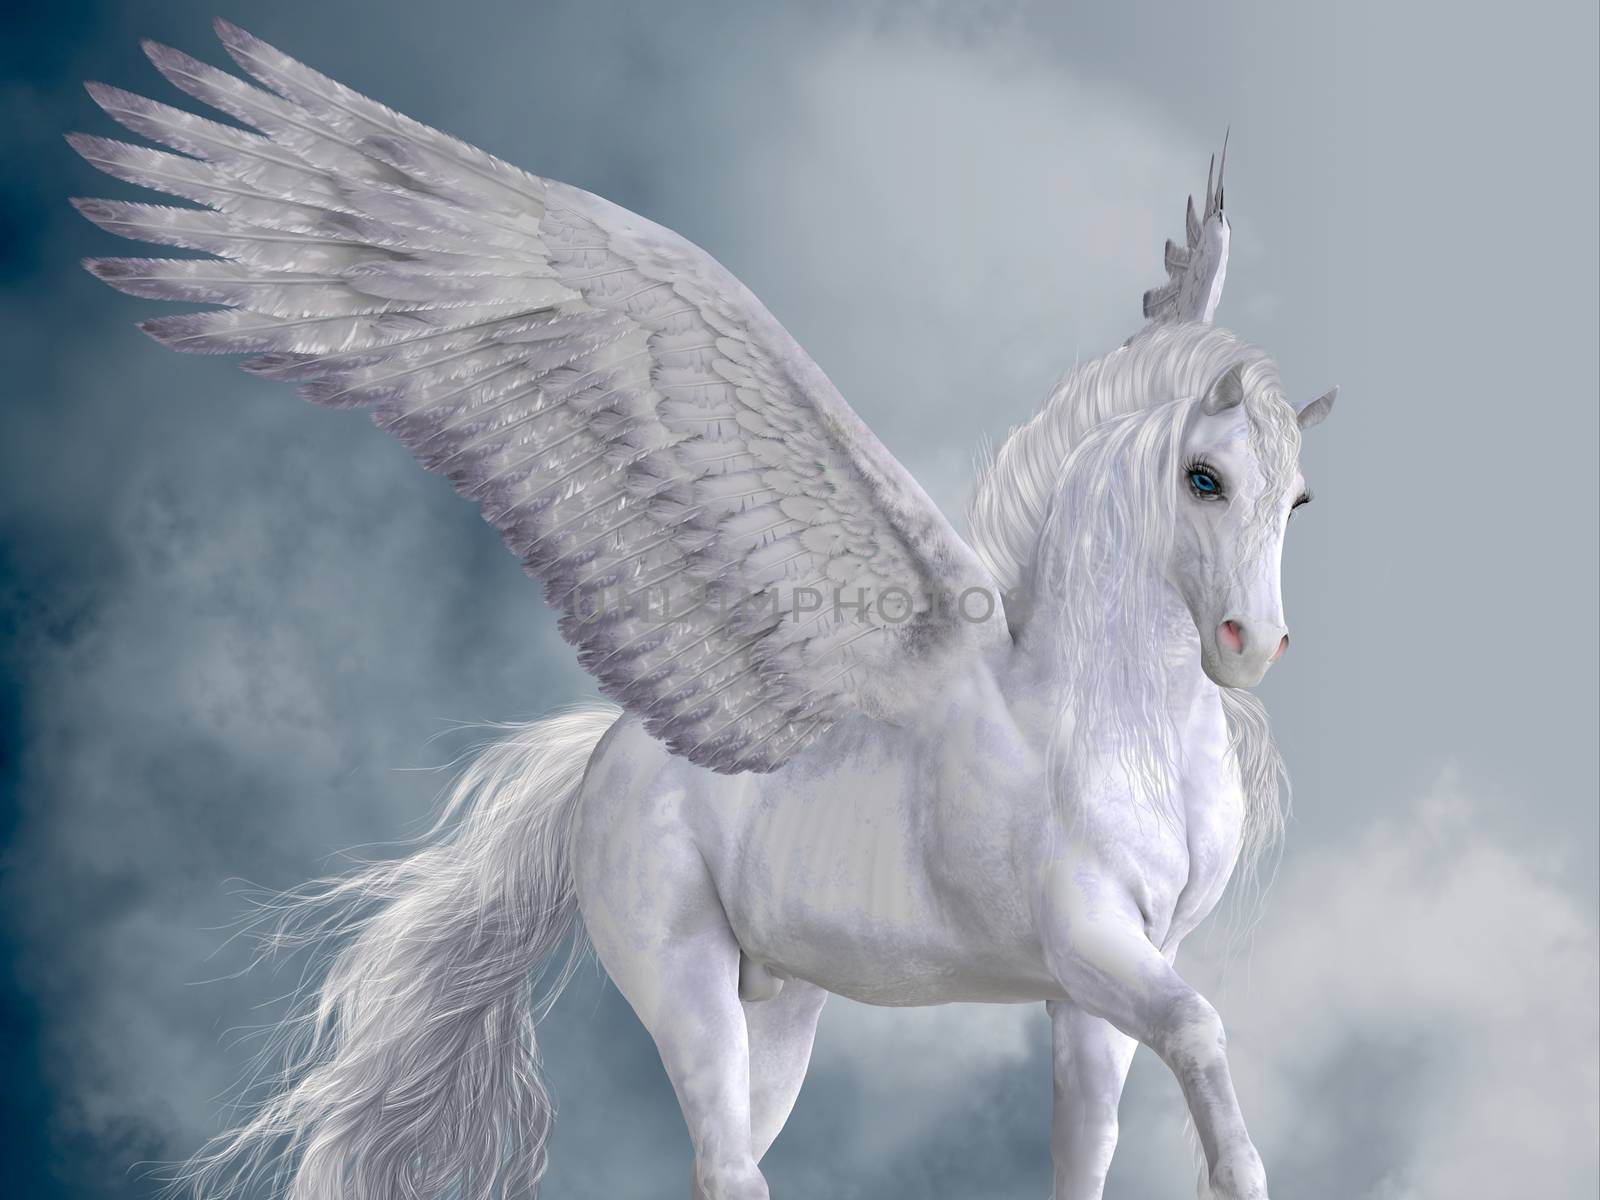 Marvelous White Pegasus by Catmando